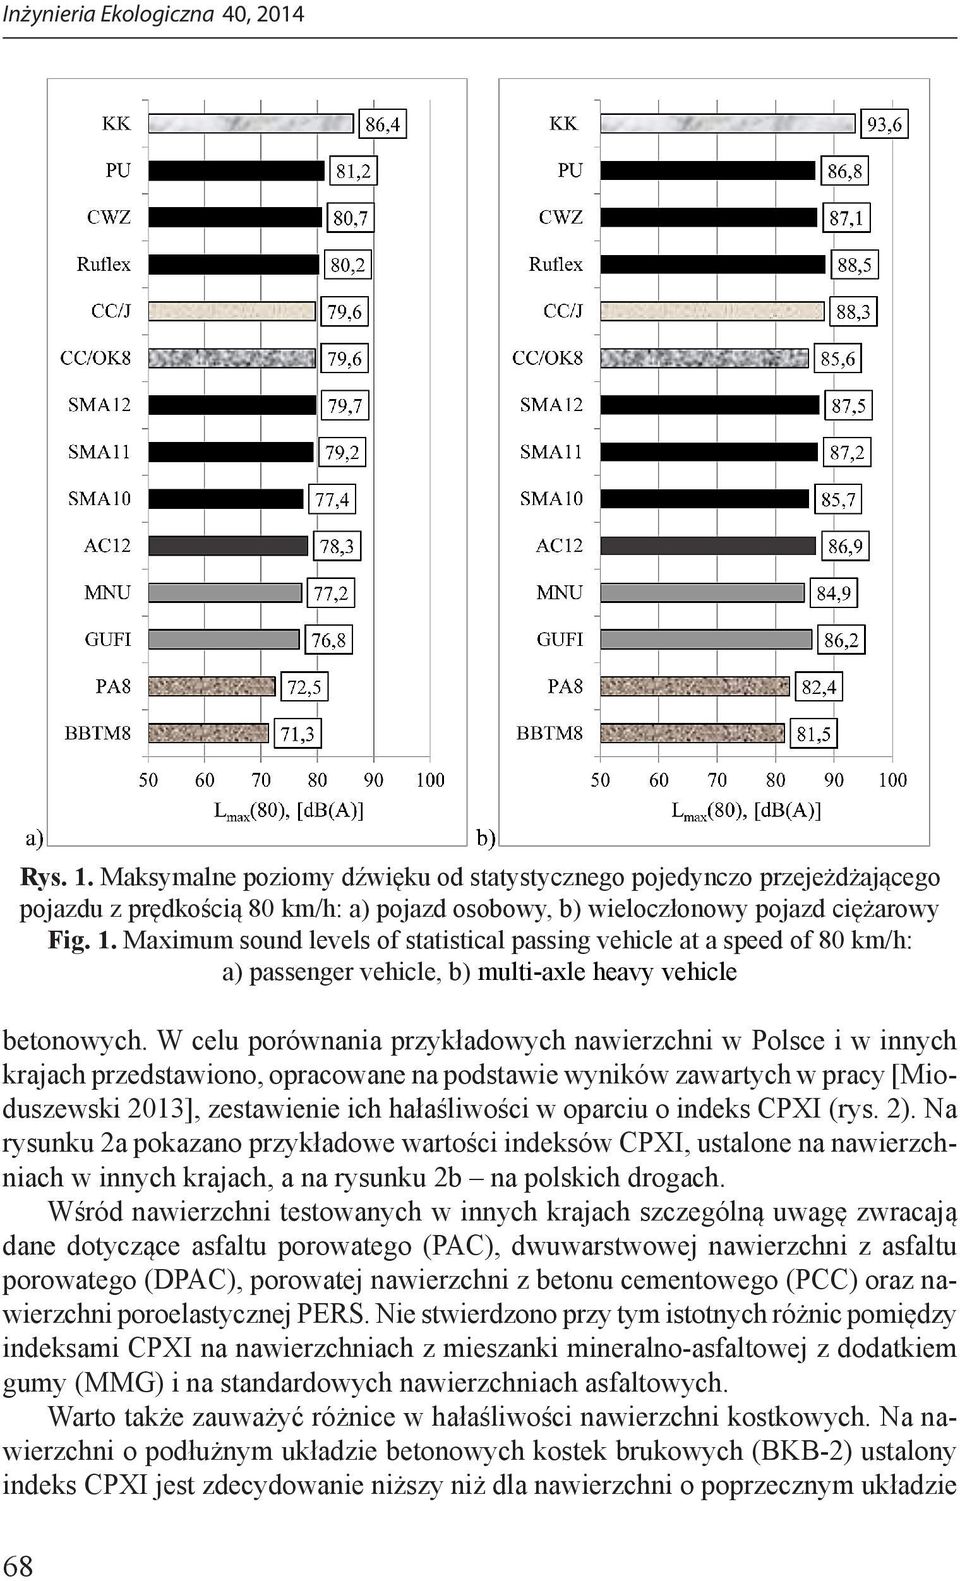 indeks CPXI (rys. 2). Na rysunku 2a pokazano przykładowe wartości indeksów CPXI, ustalone na nawierzchniach w innych krajach, a na rysunku 2b na polskich drogach.